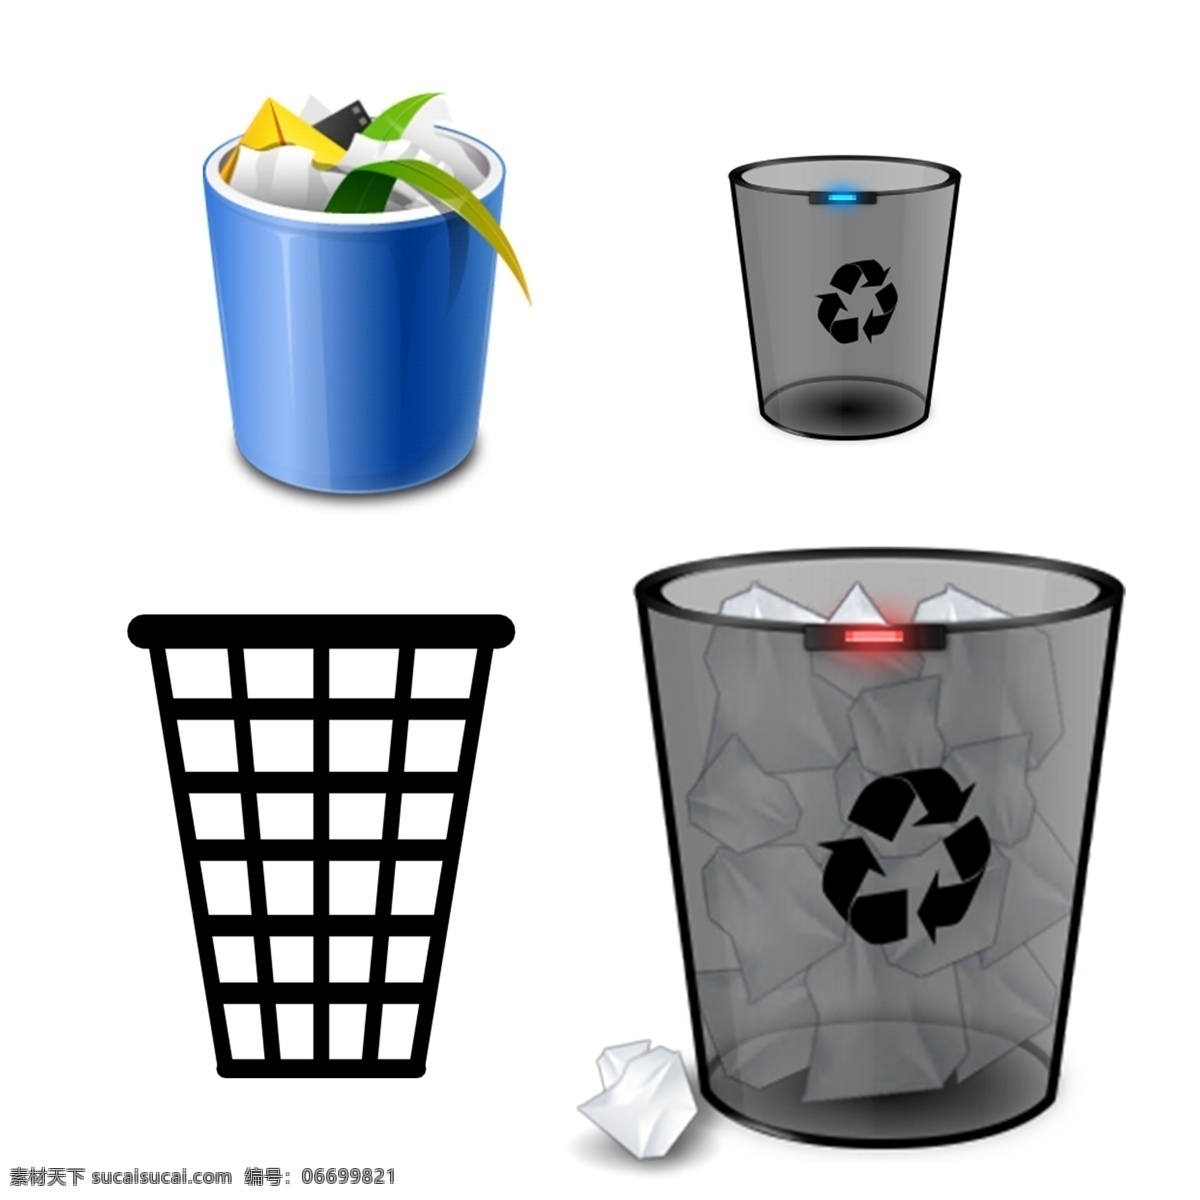 垃圾桶 环保 可回收 可回收垃圾 垃圾分类